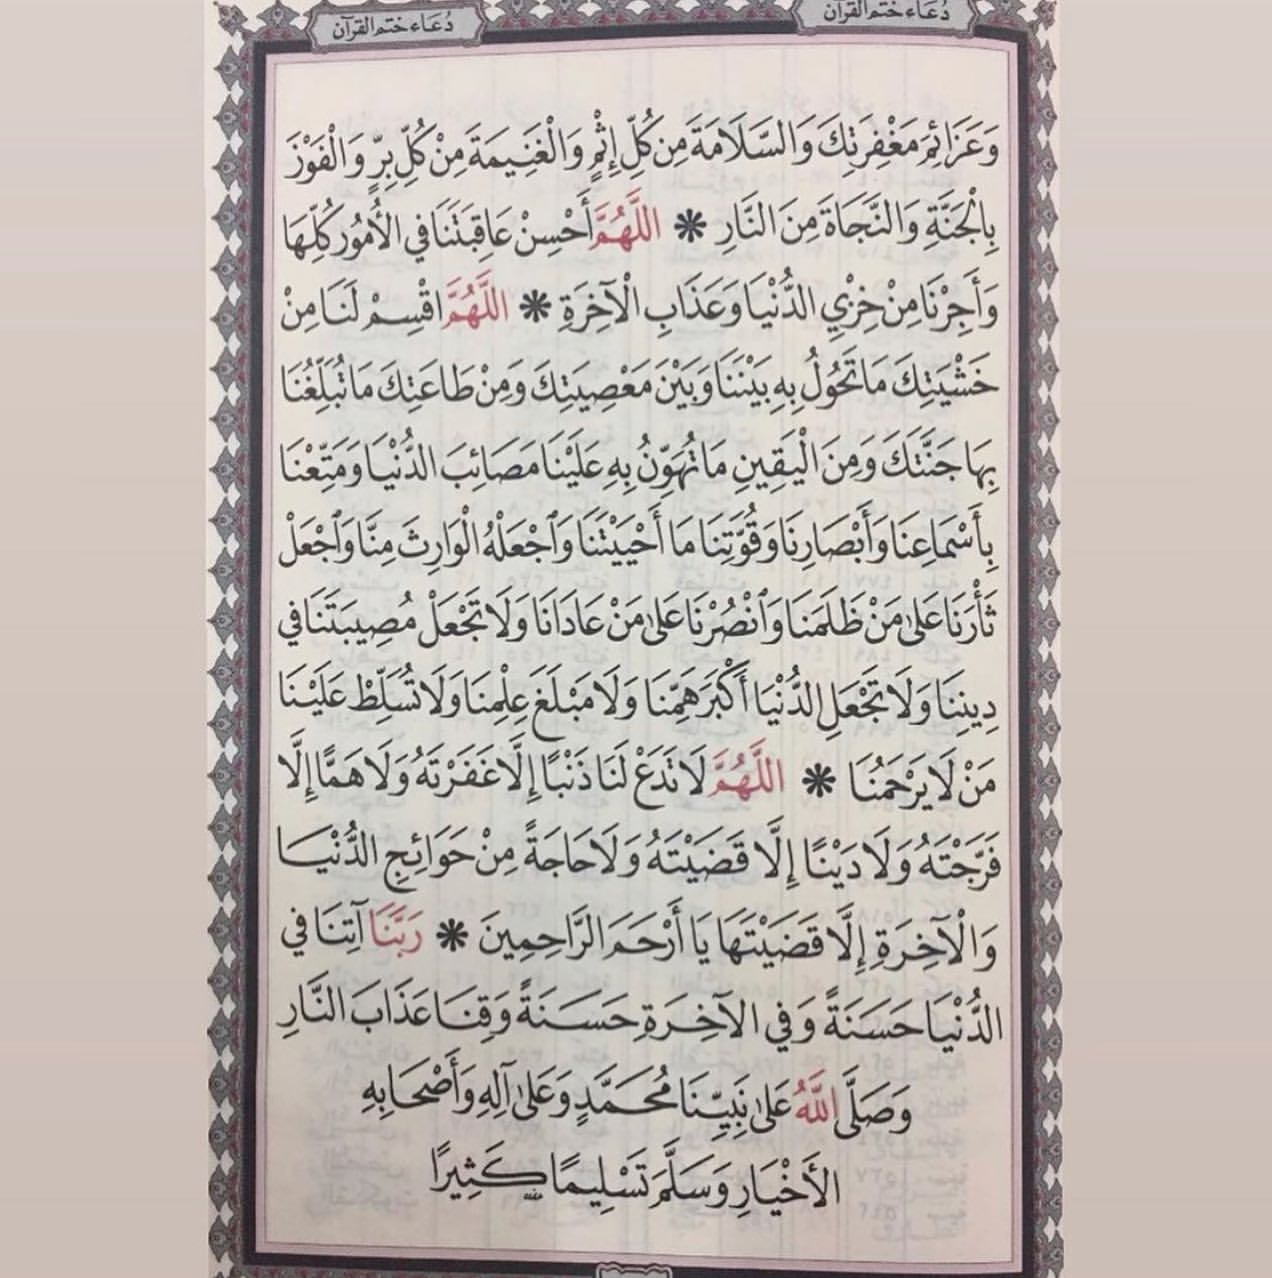 دعاء ختم القرآن pdf